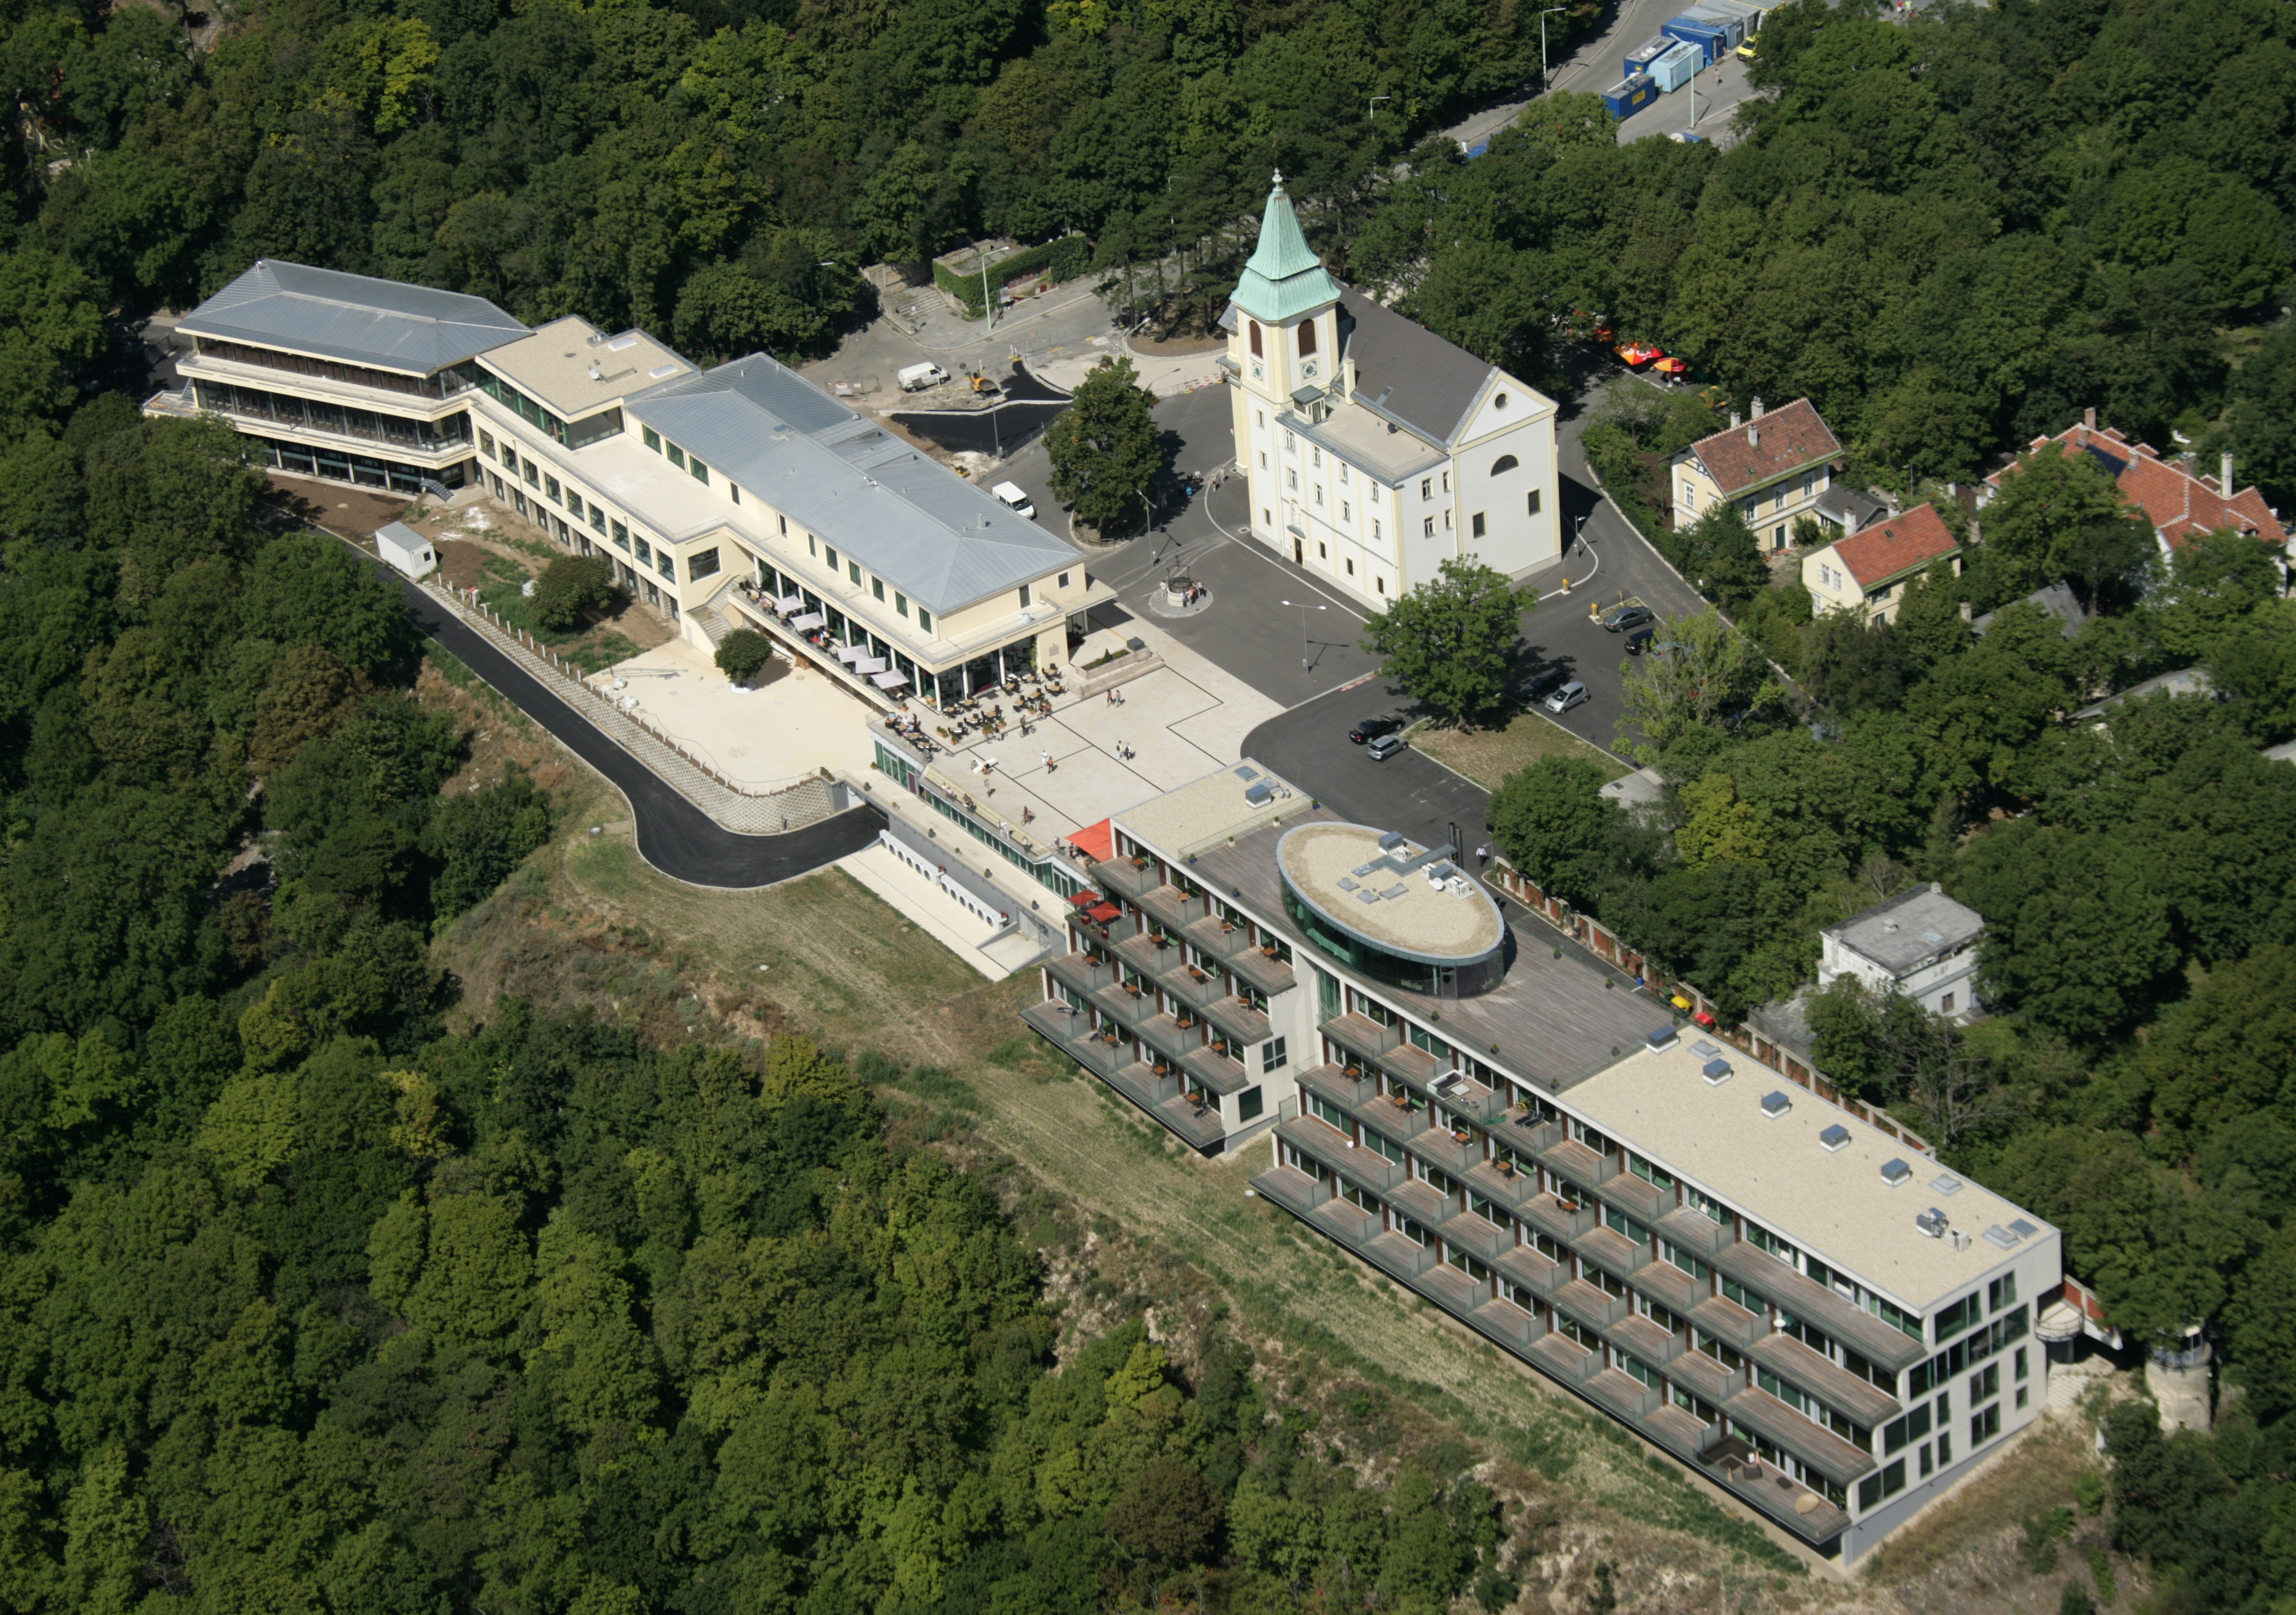 Hotel Kahlenberg - Bygningskonstruksjon